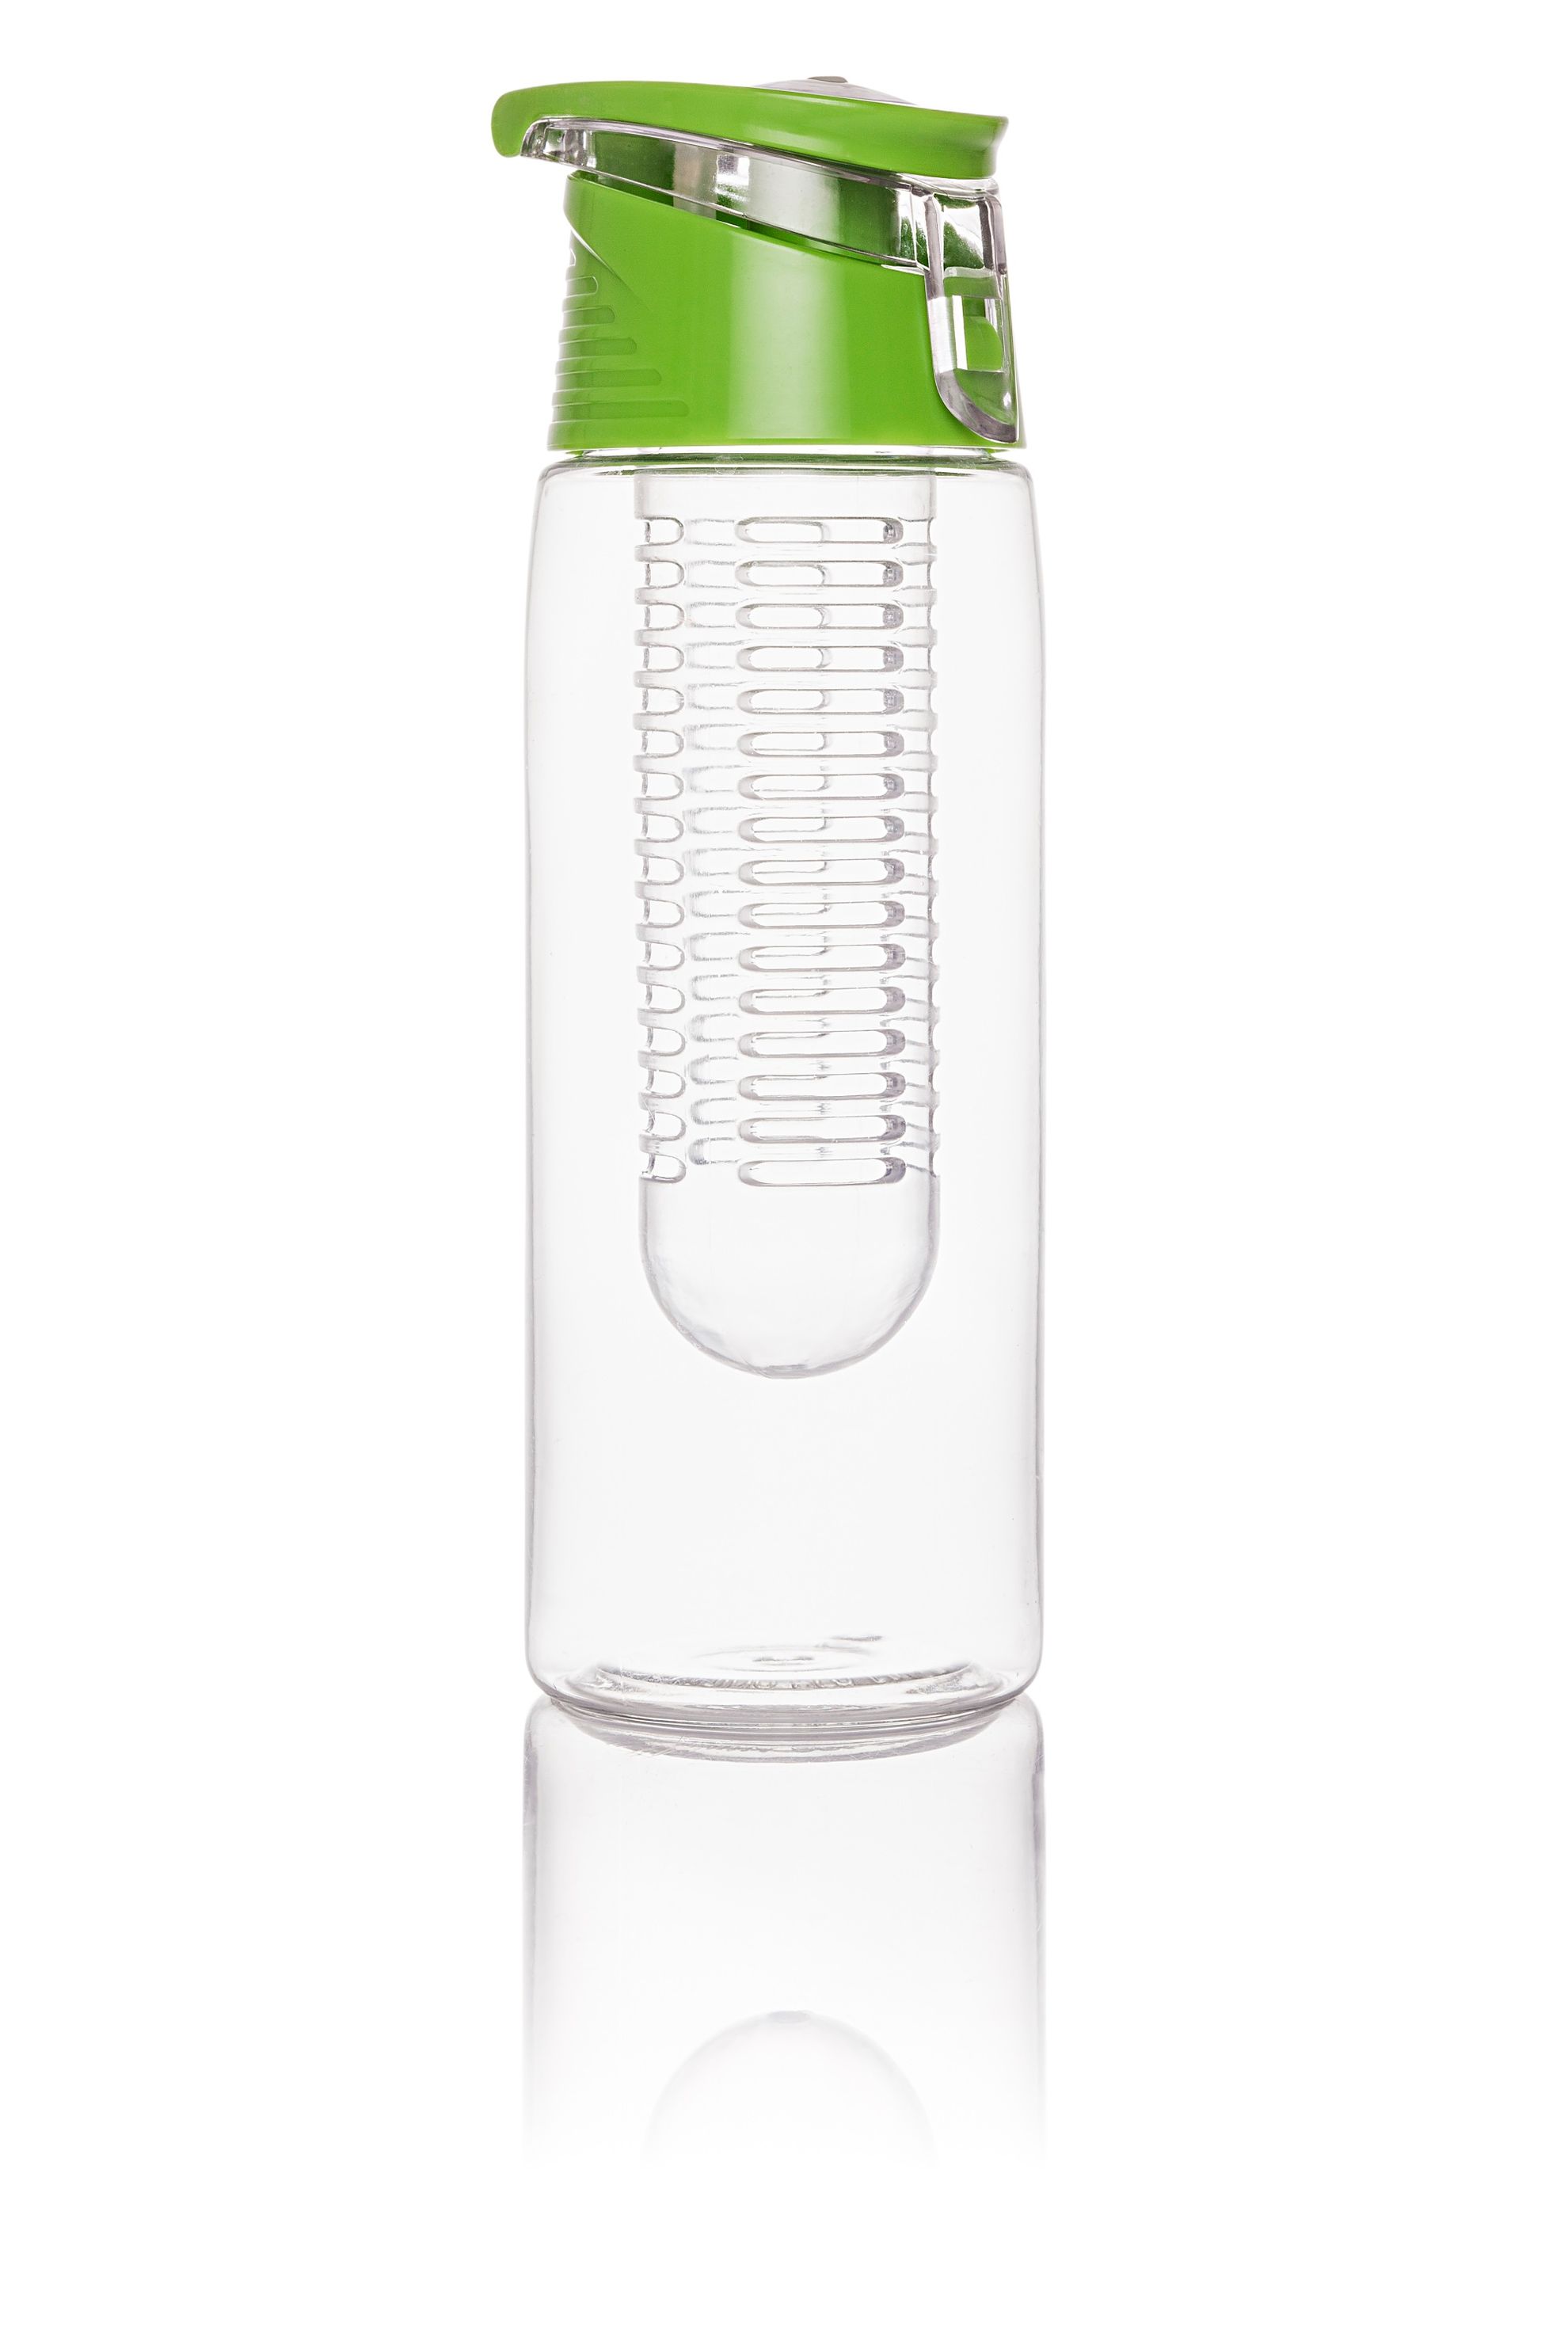 Trinkflasche mit Infuser, 750ml, grün bestellen | Weltbild.ch